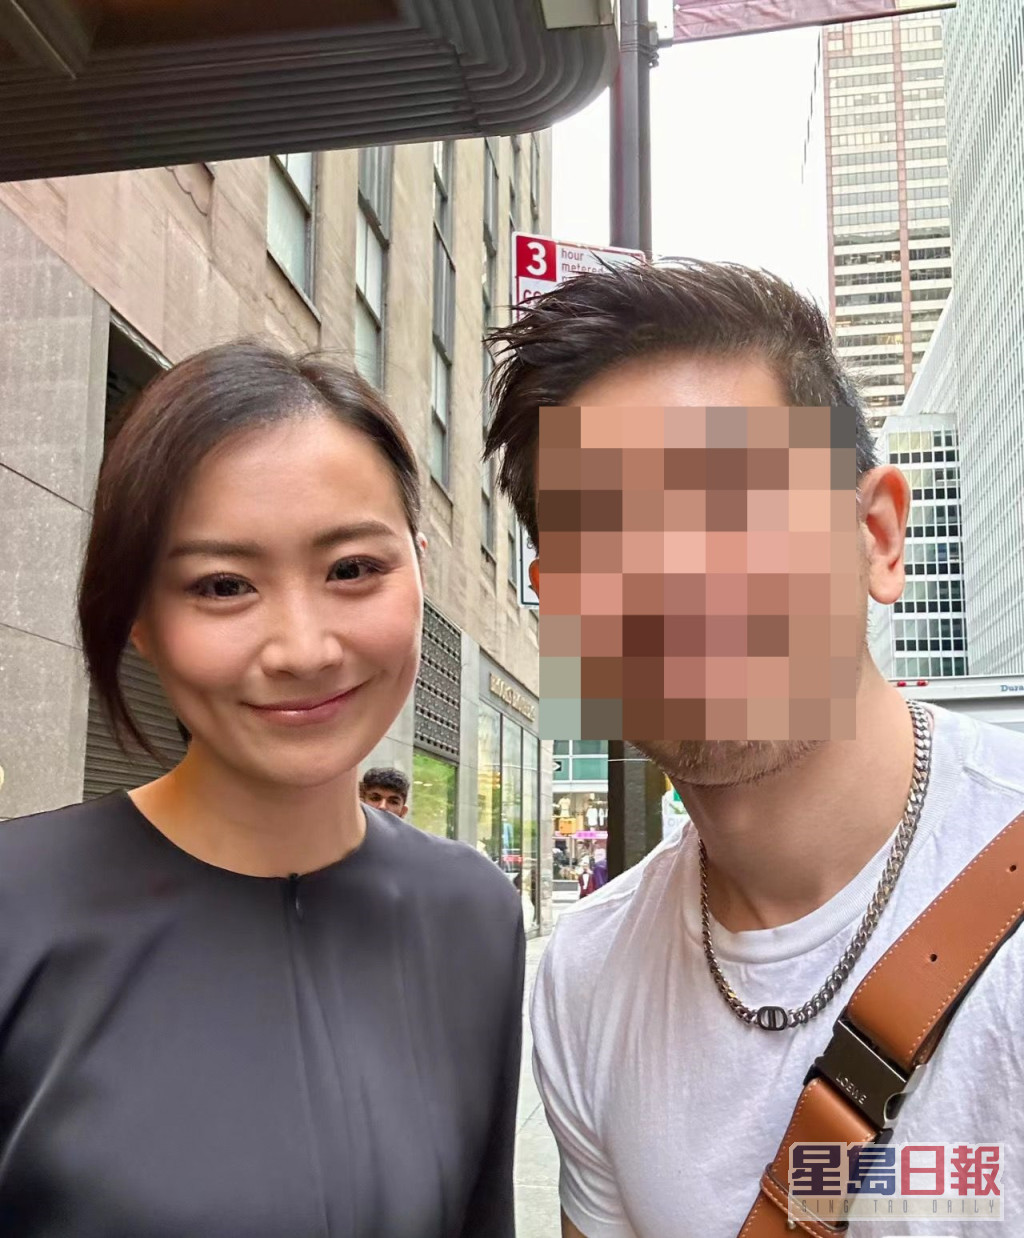 该网民近日贴出与陈法拉的合照，从上一张照片的背景及衣着推测，相信是同一日影。